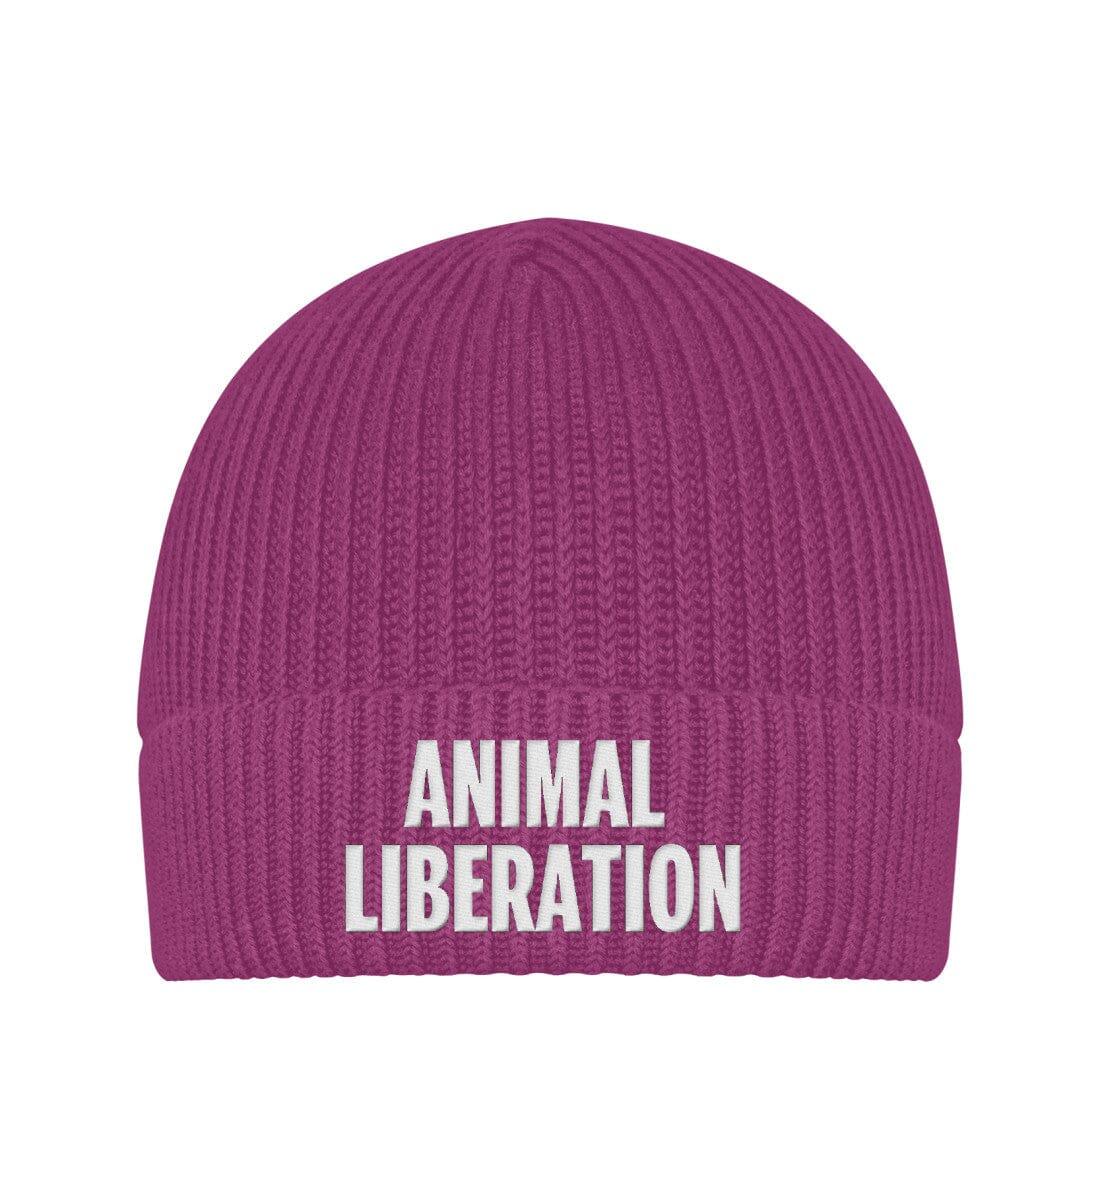 Animal Liberation - Fischermütze mit Stick - Team Vegan © vegan t shirt